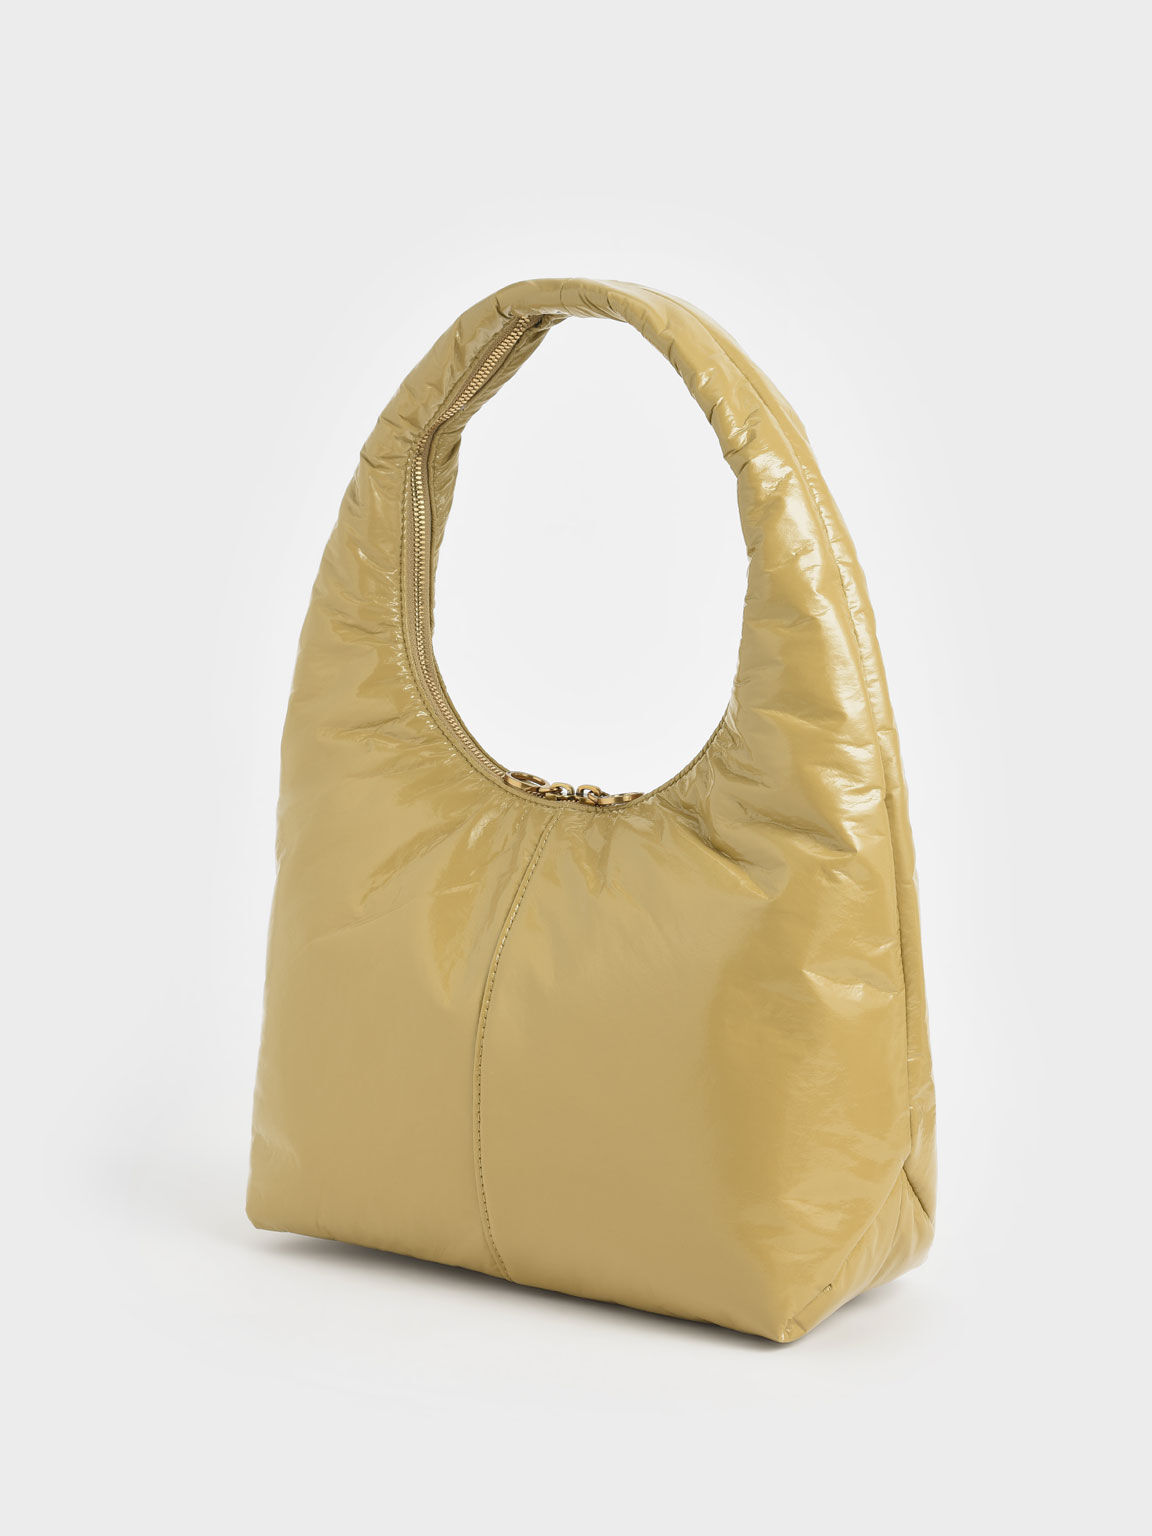 Arch Wrinkled-Effect Large Hobo Bag, Sand, hi-res